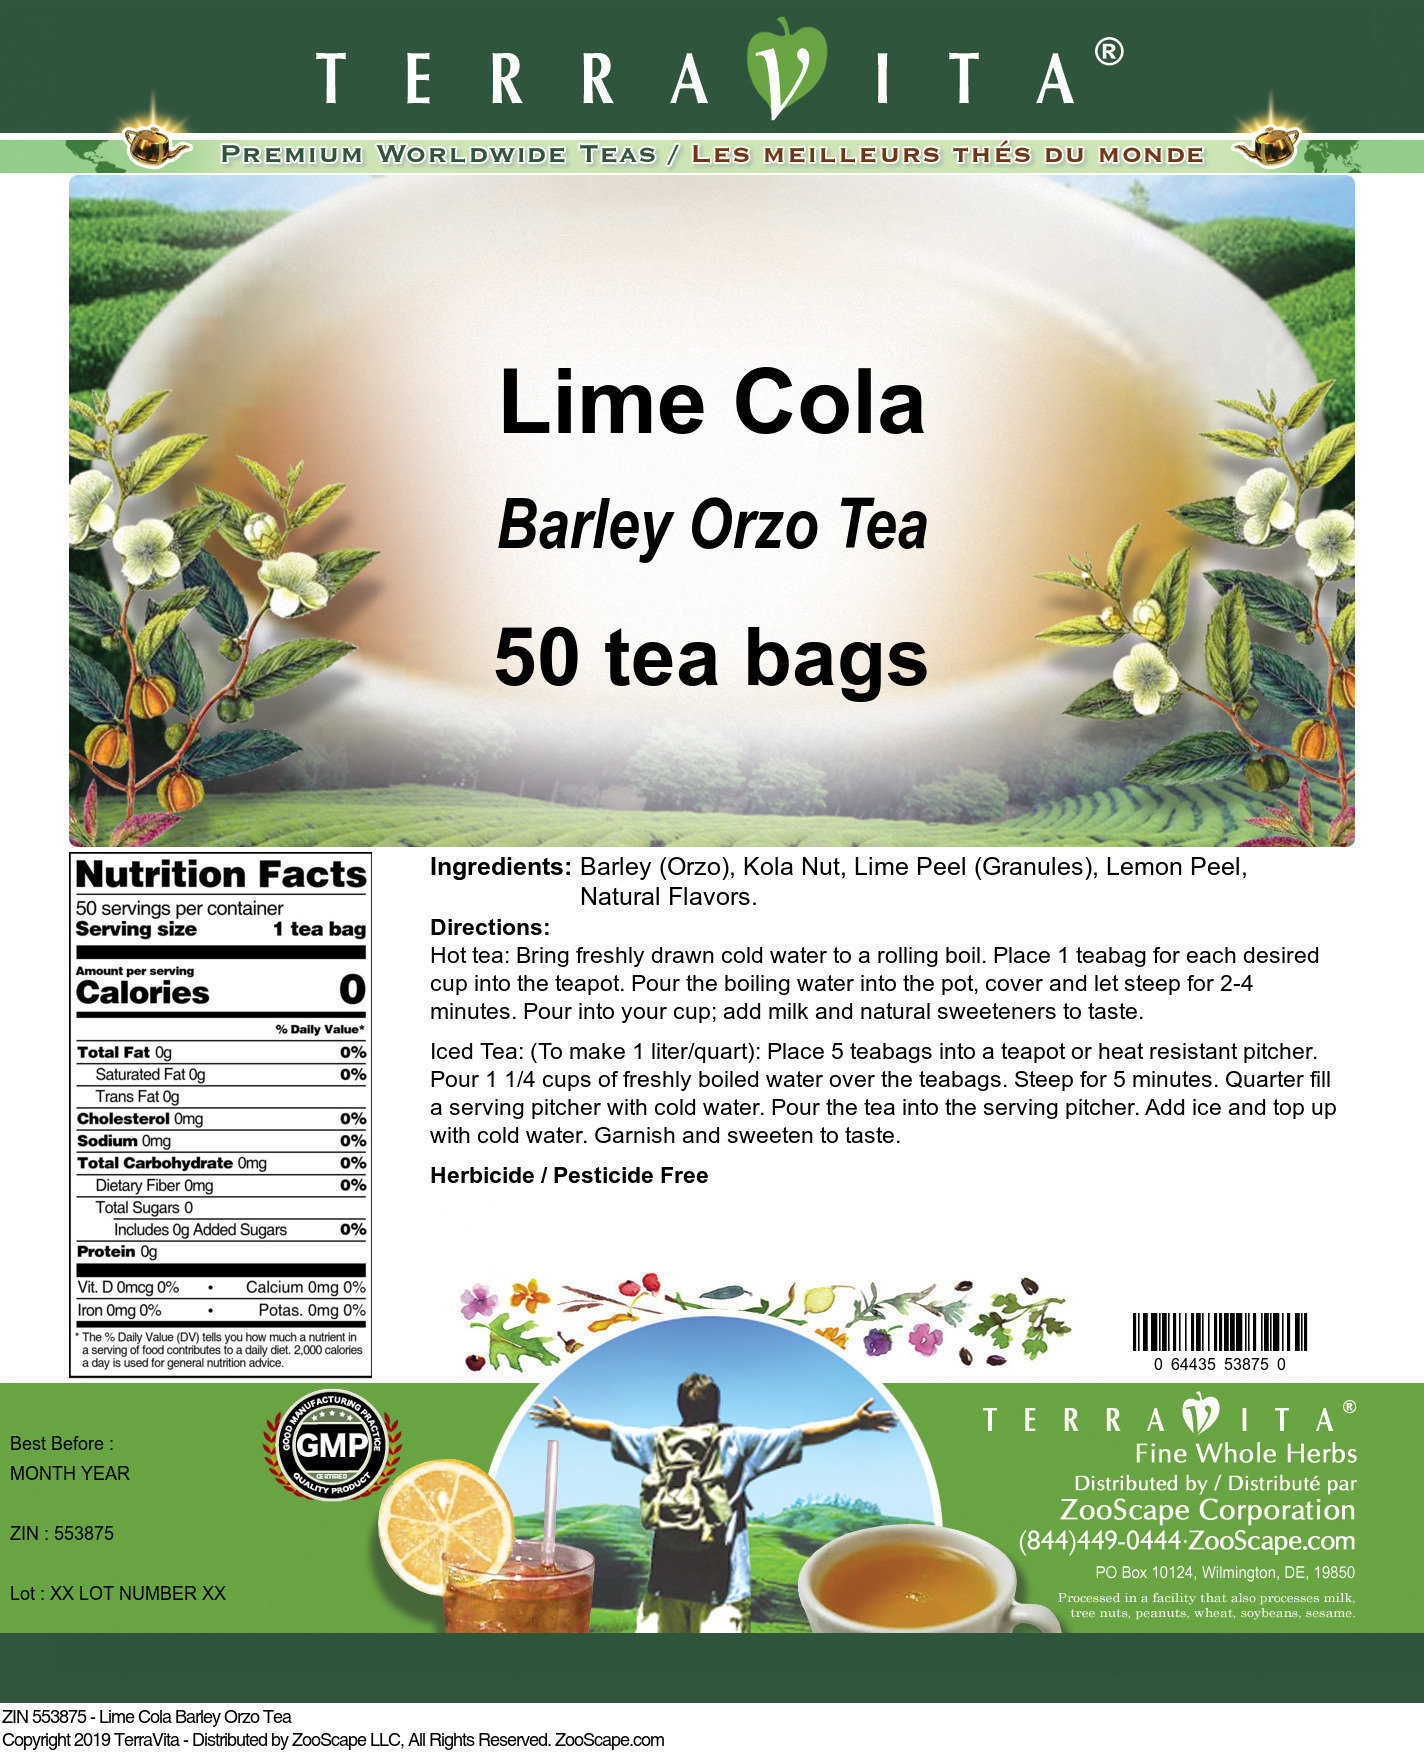 Lime Cola Barley Orzo Tea - Label